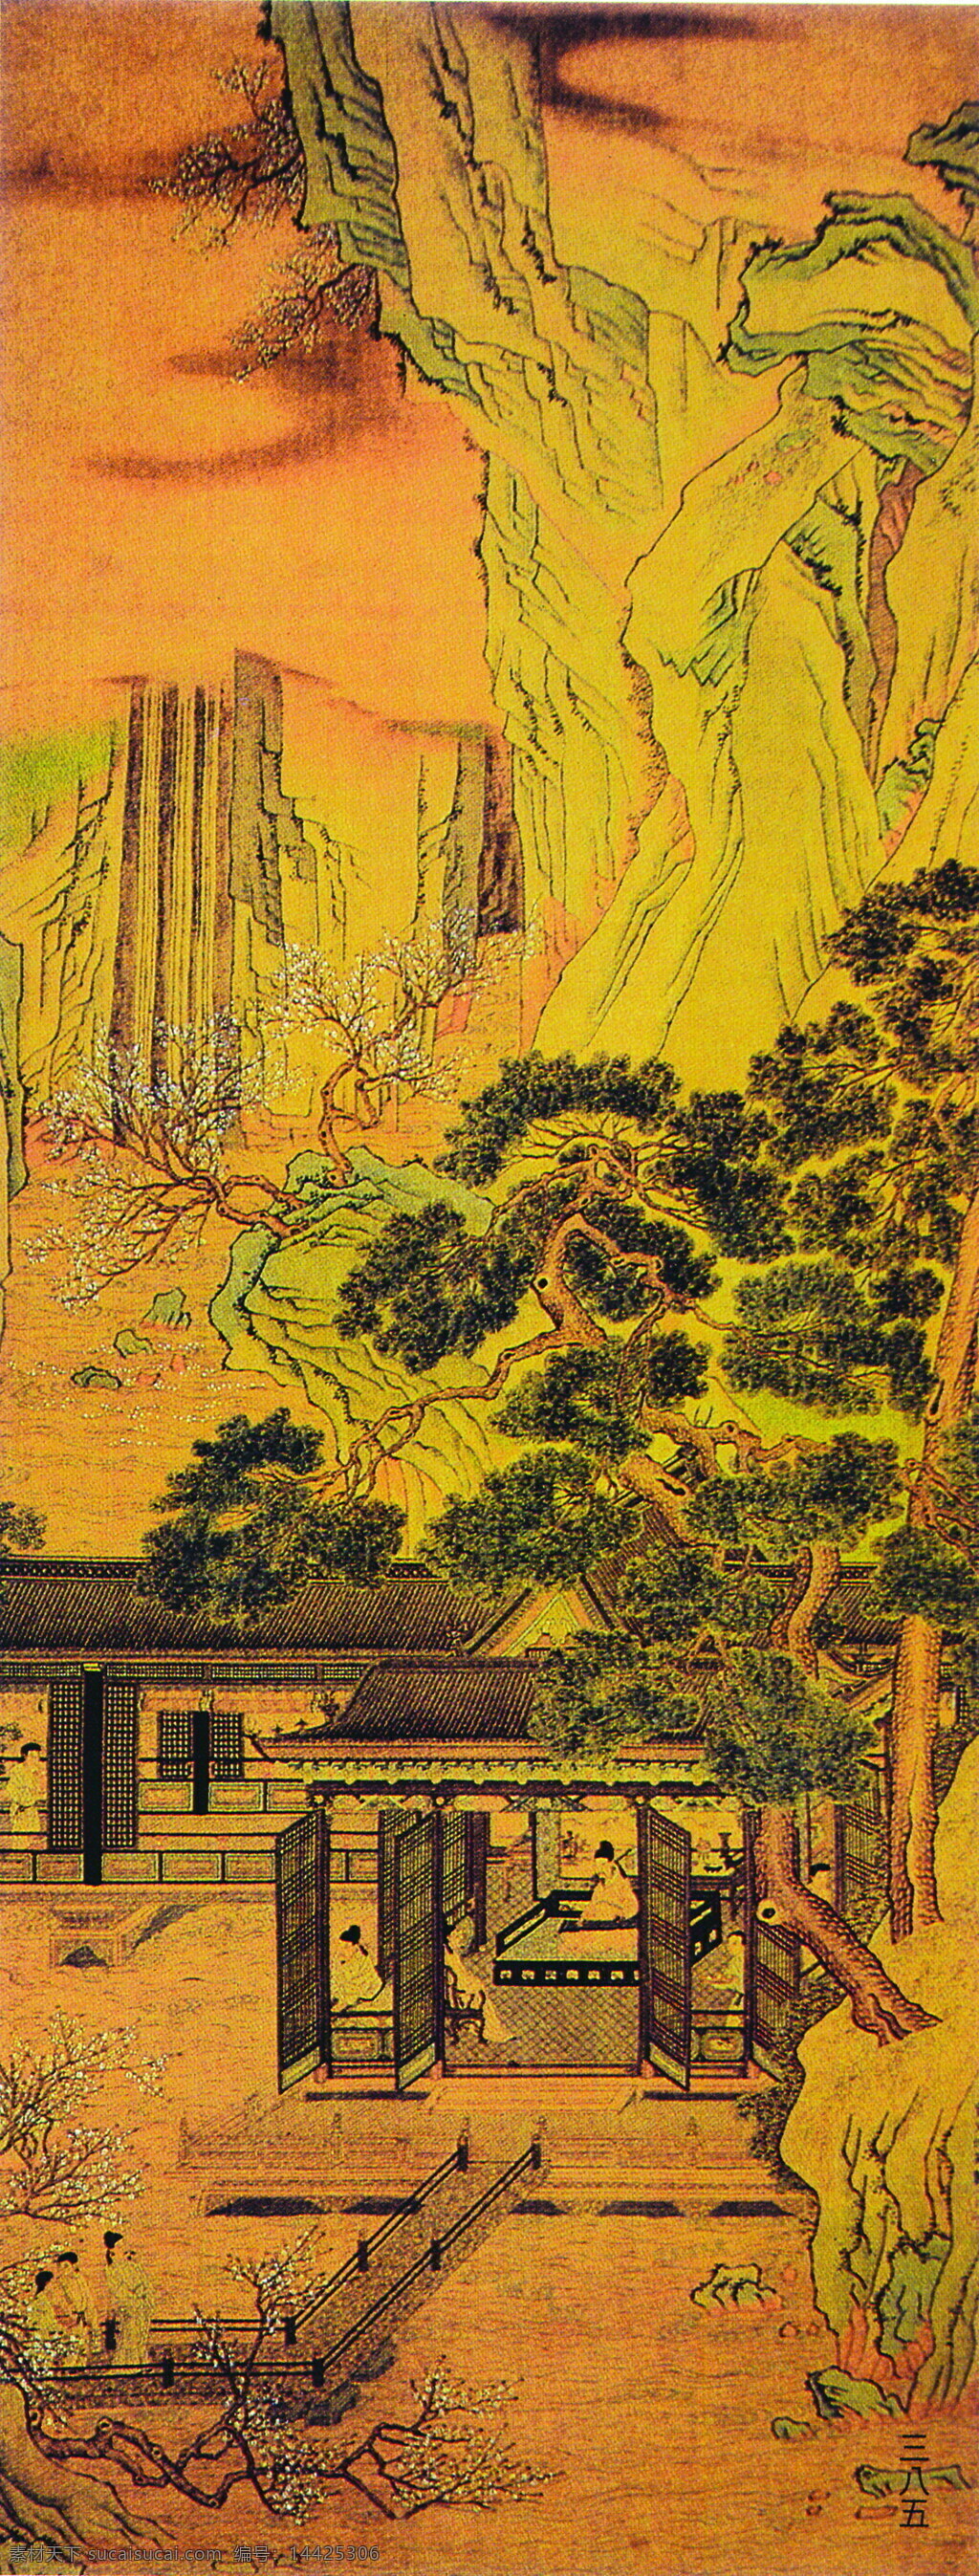 中国画 艺术 走廊 工笔 古代名画 古代山水 国画 绘画 美术 牡丹 人物 山水 绶带 屋子 重彩 现代 工笔重彩画